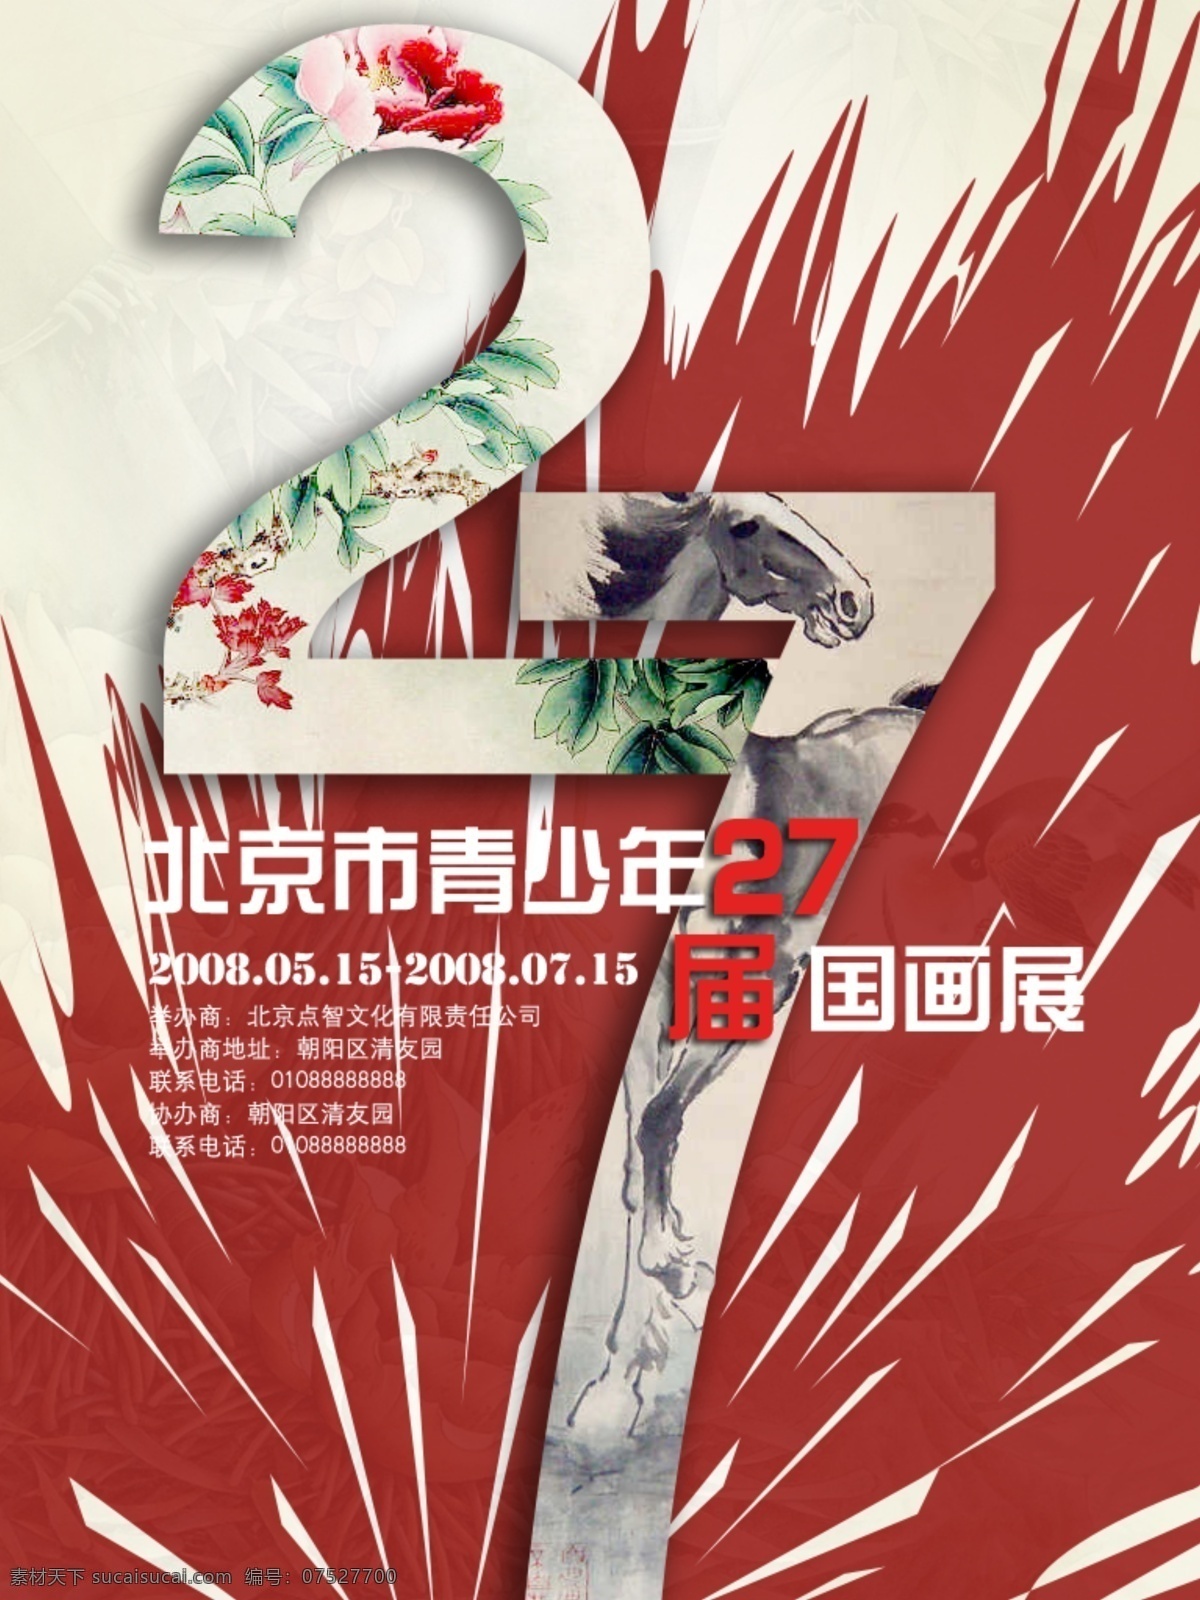 国画展 国画 牡丹 喷溅 数字 中国风 中国风海报